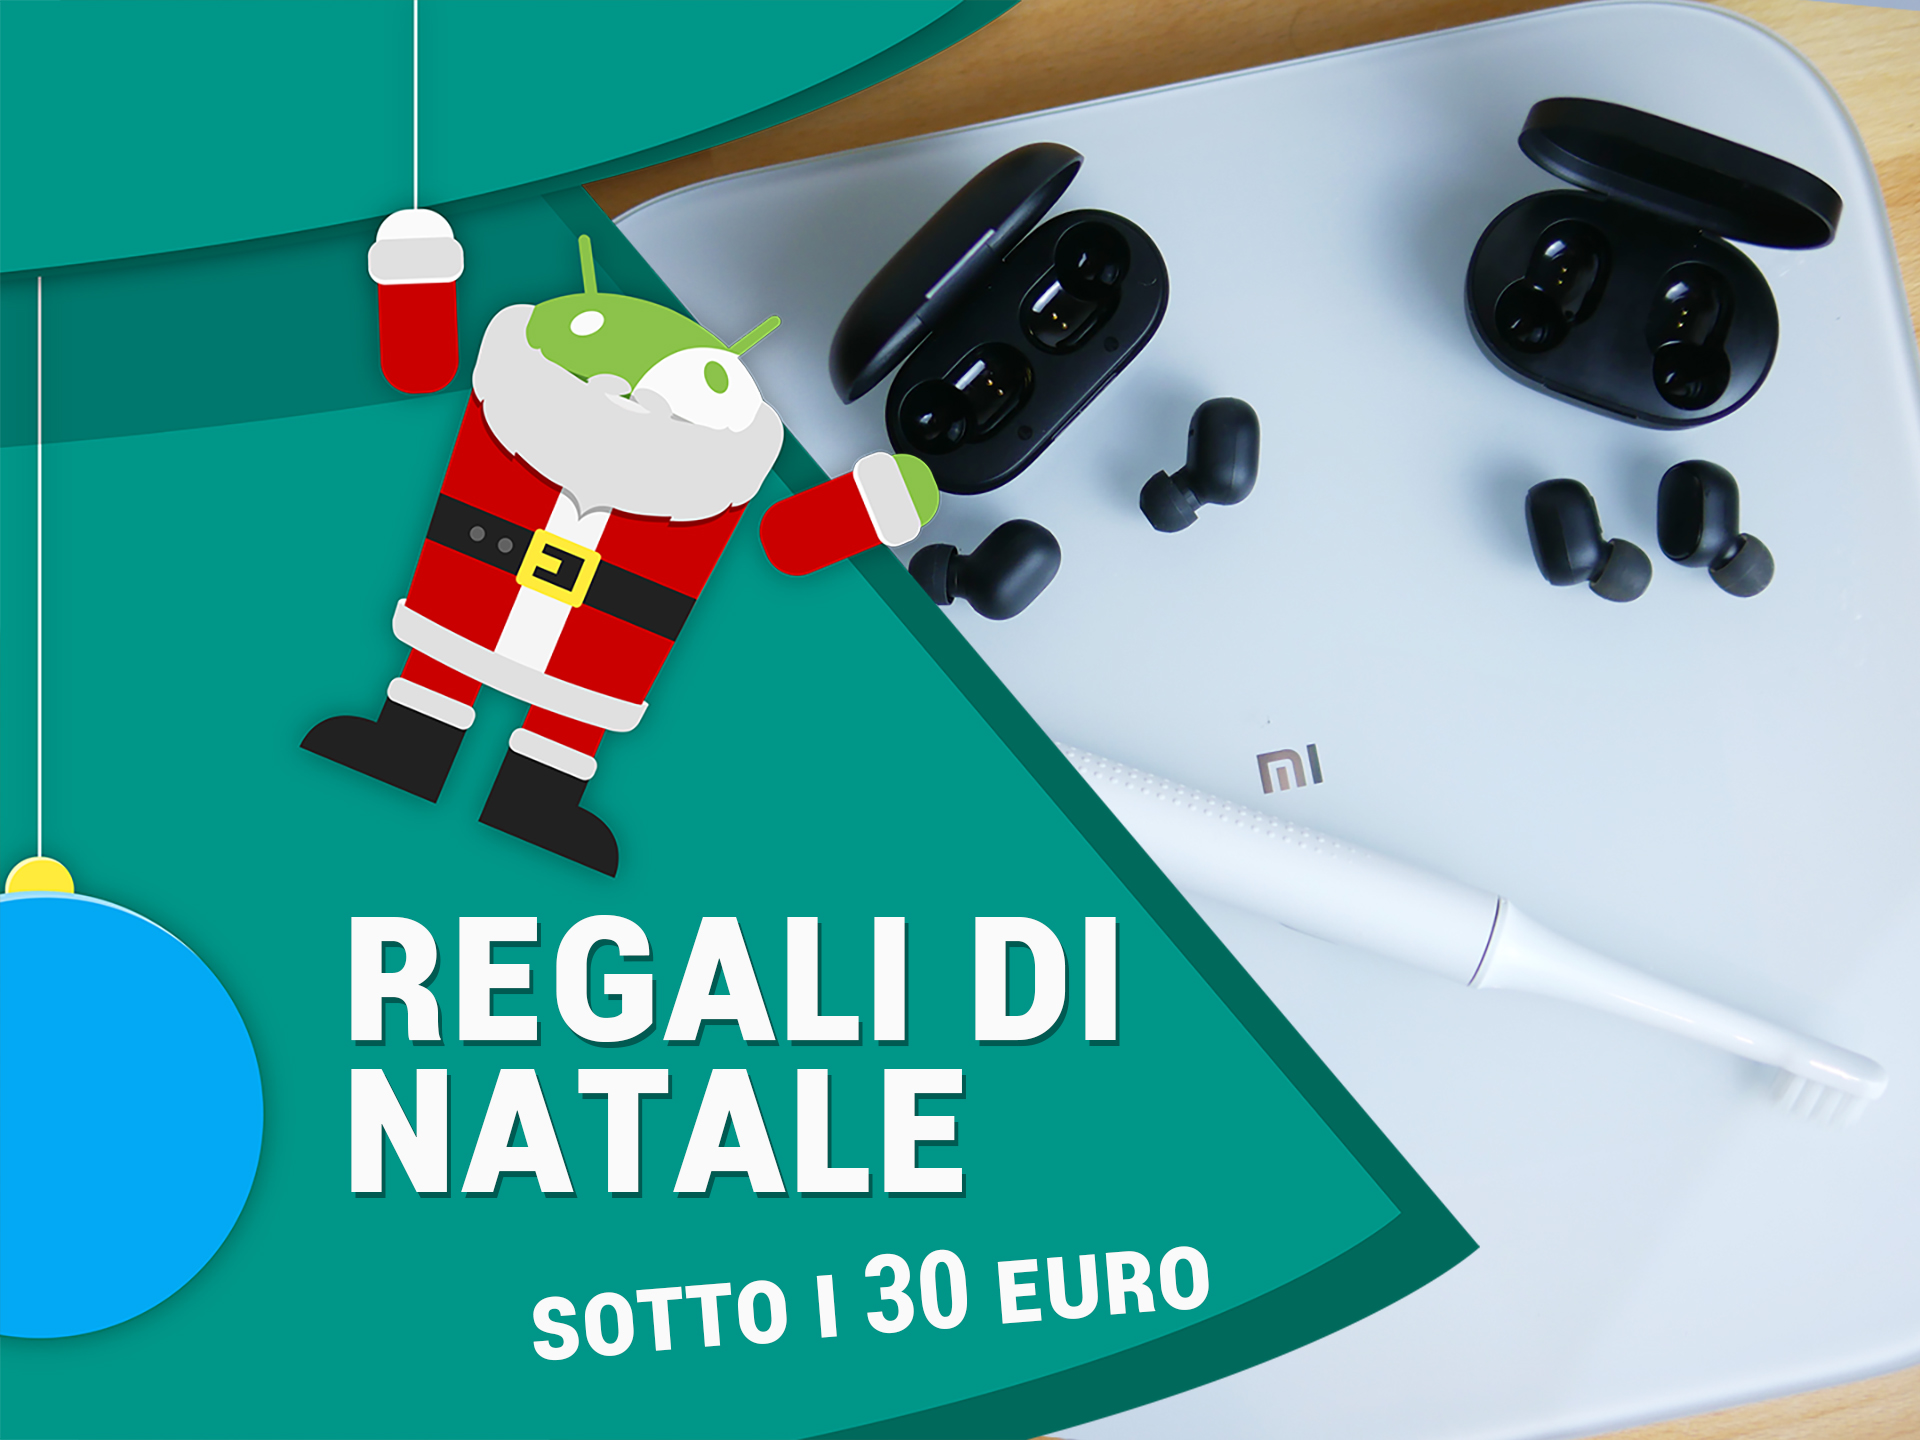 Consigli Regali Natale.Qualche Gadget Tech Per Natale Sotto I 30 Euro Ecco I Nostri Consigli